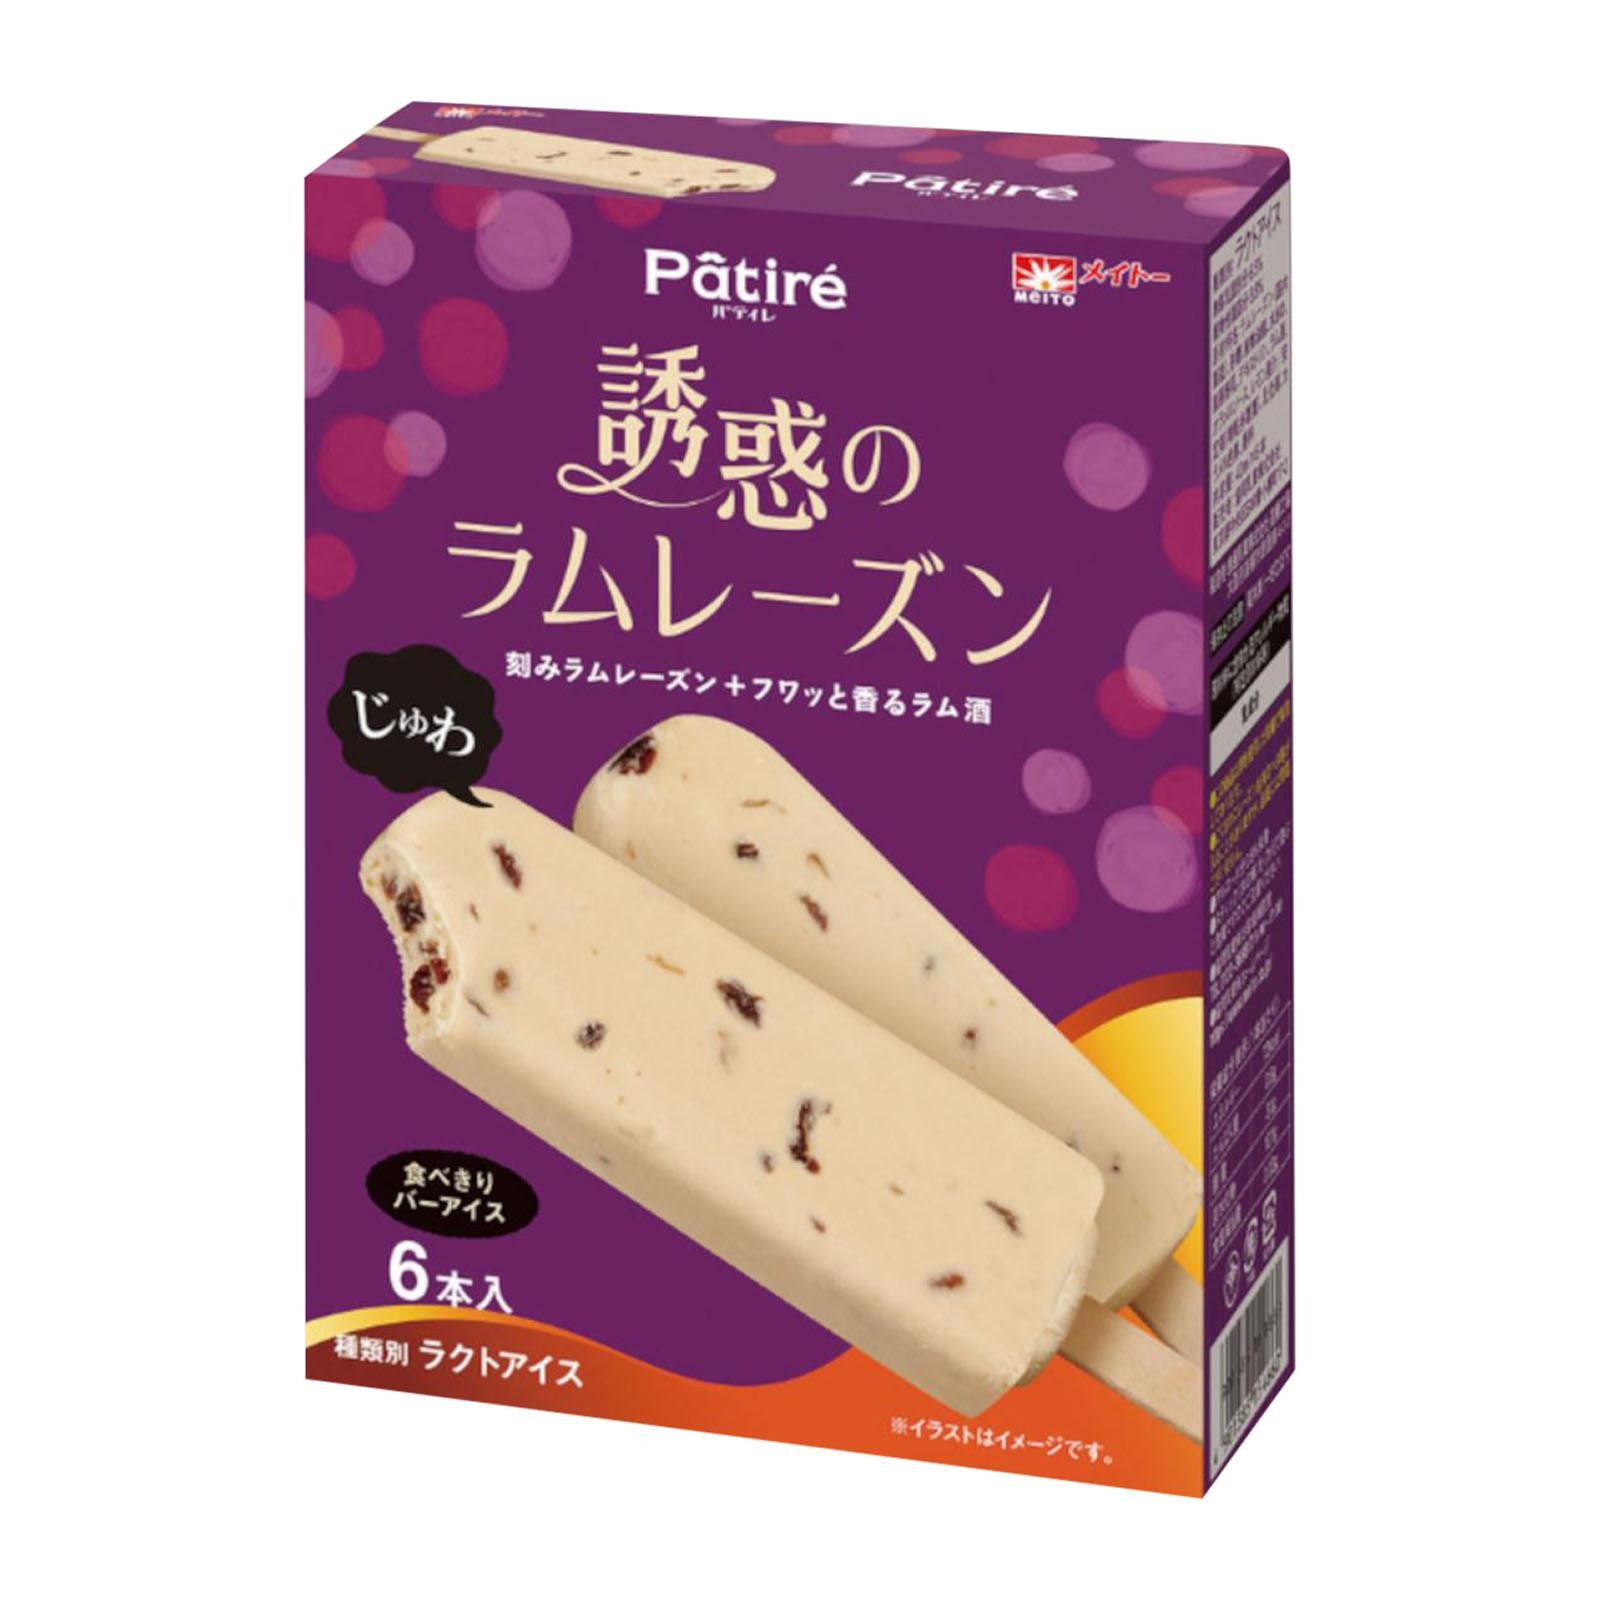 meitopatire-temptation-raisin-ice-cream